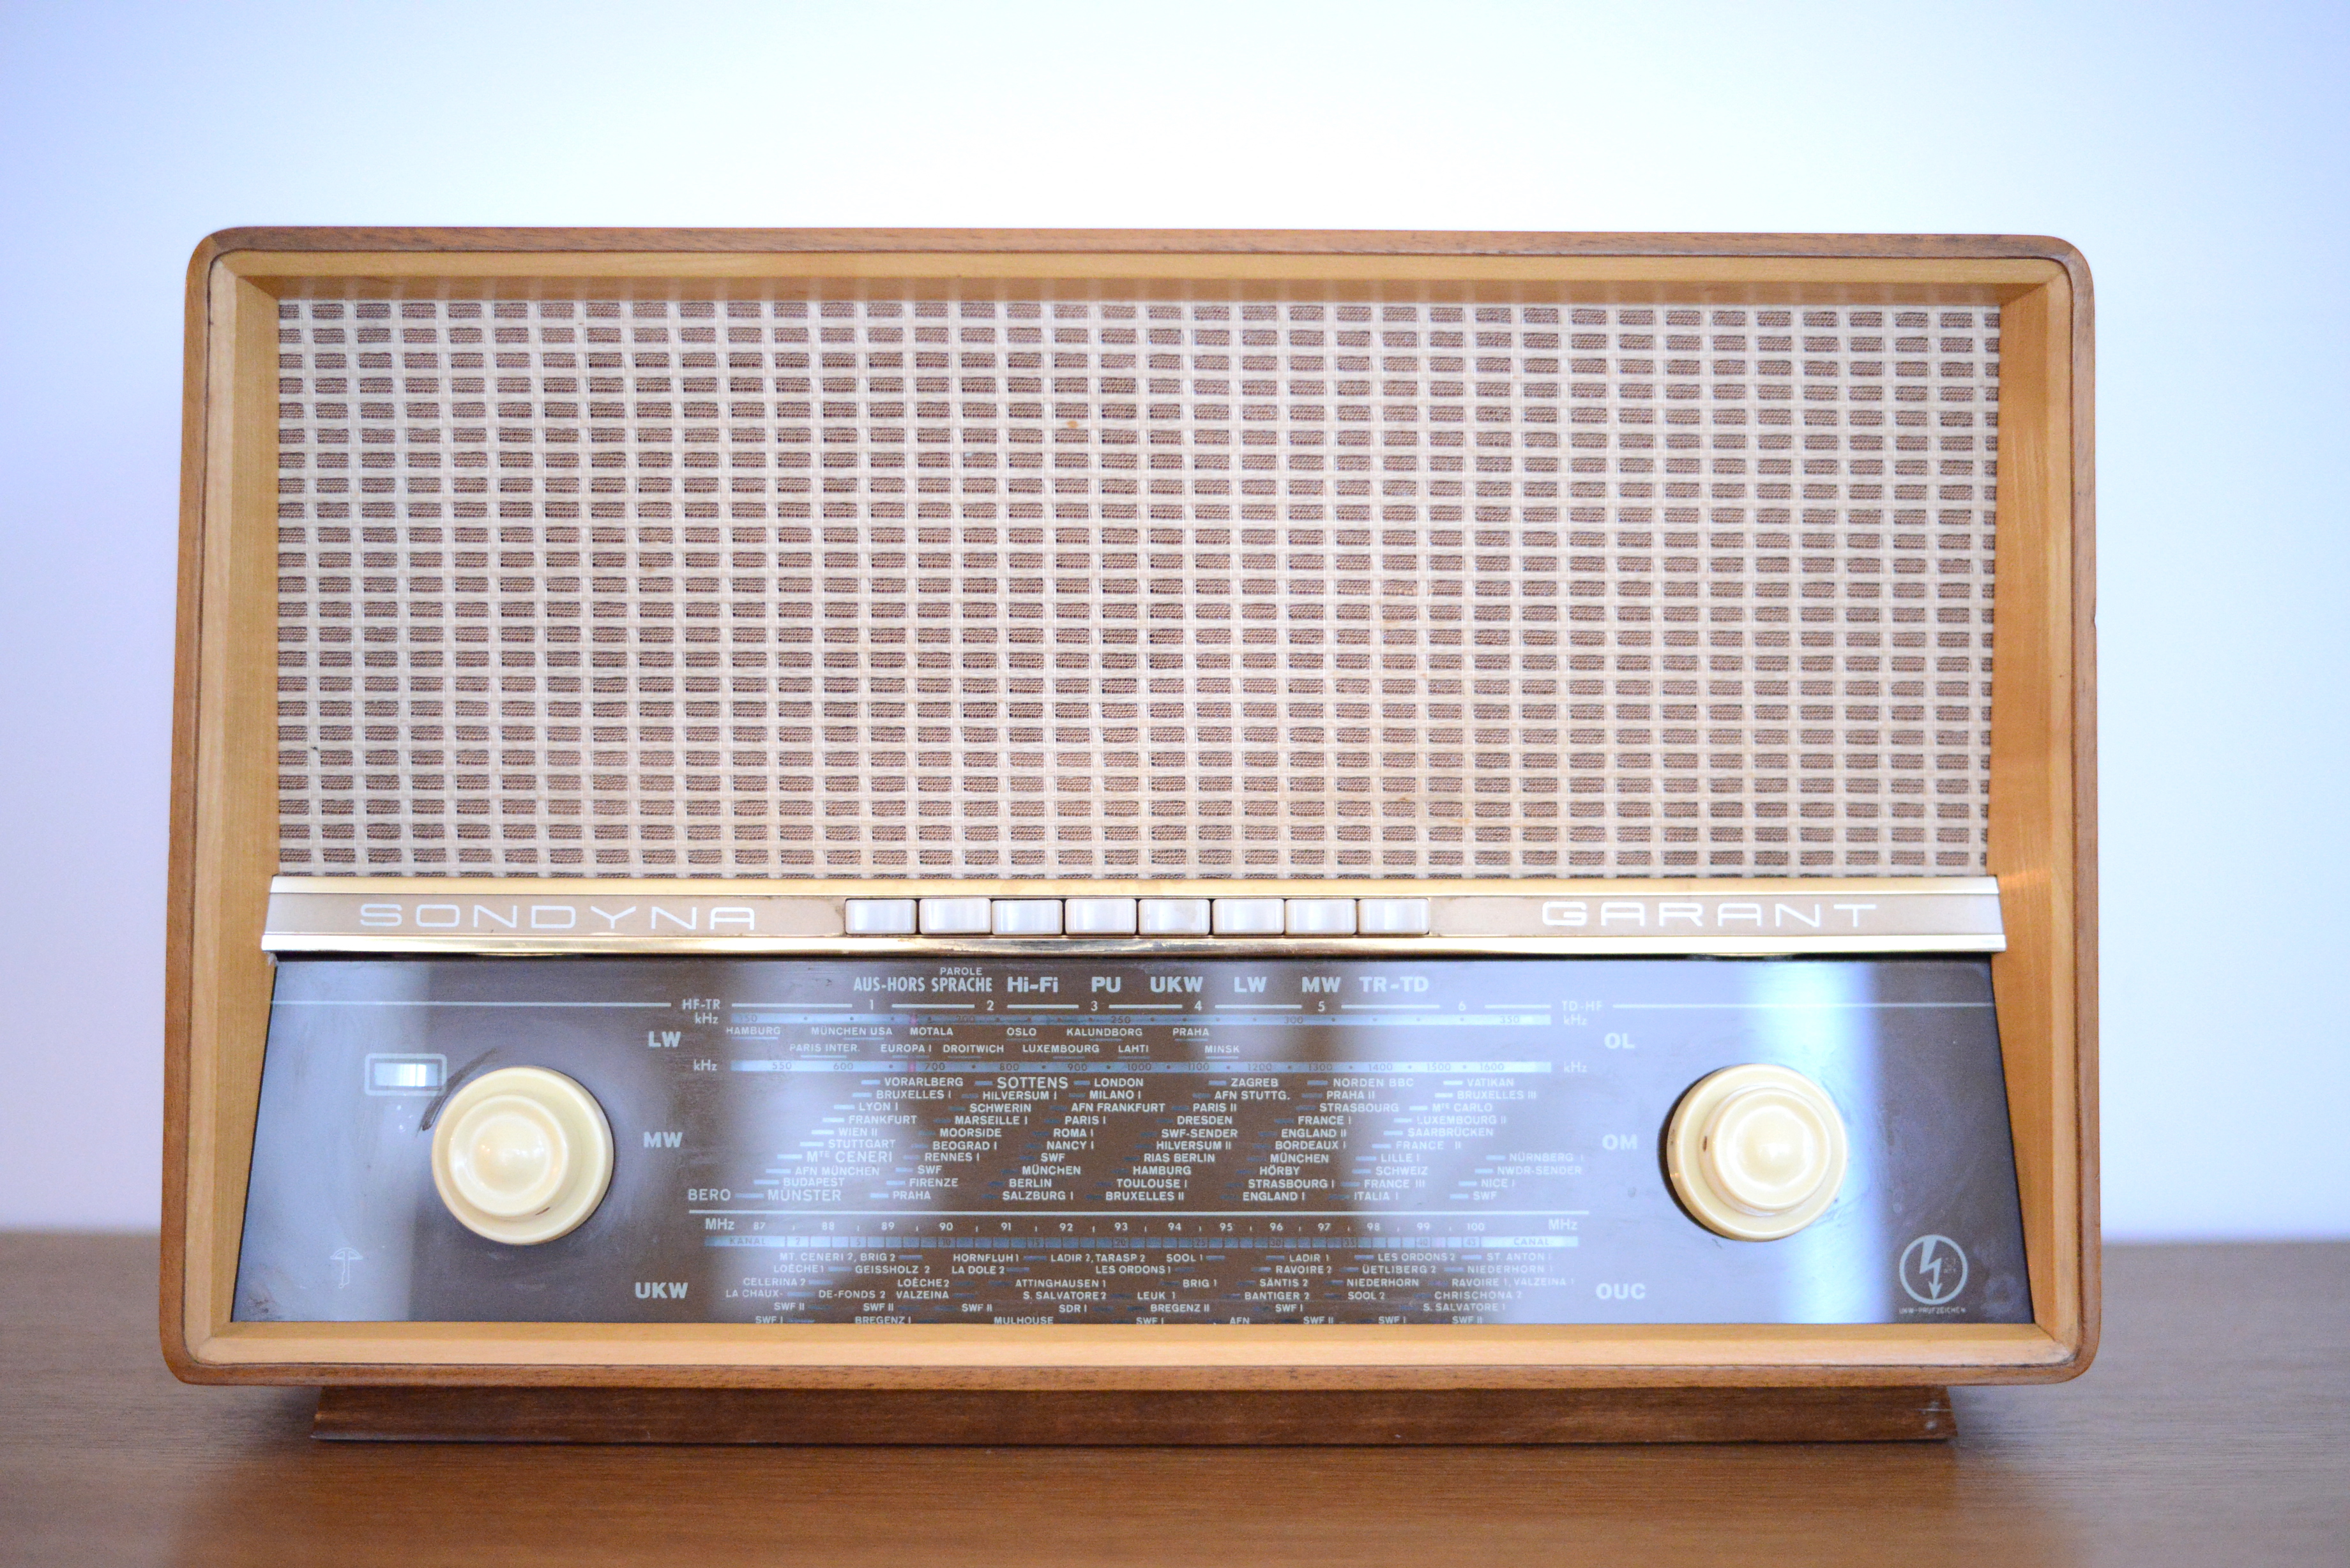 Sondyna Garant Swiss Radio 1961 heyday möbel moebel Zürich Zurich Binz